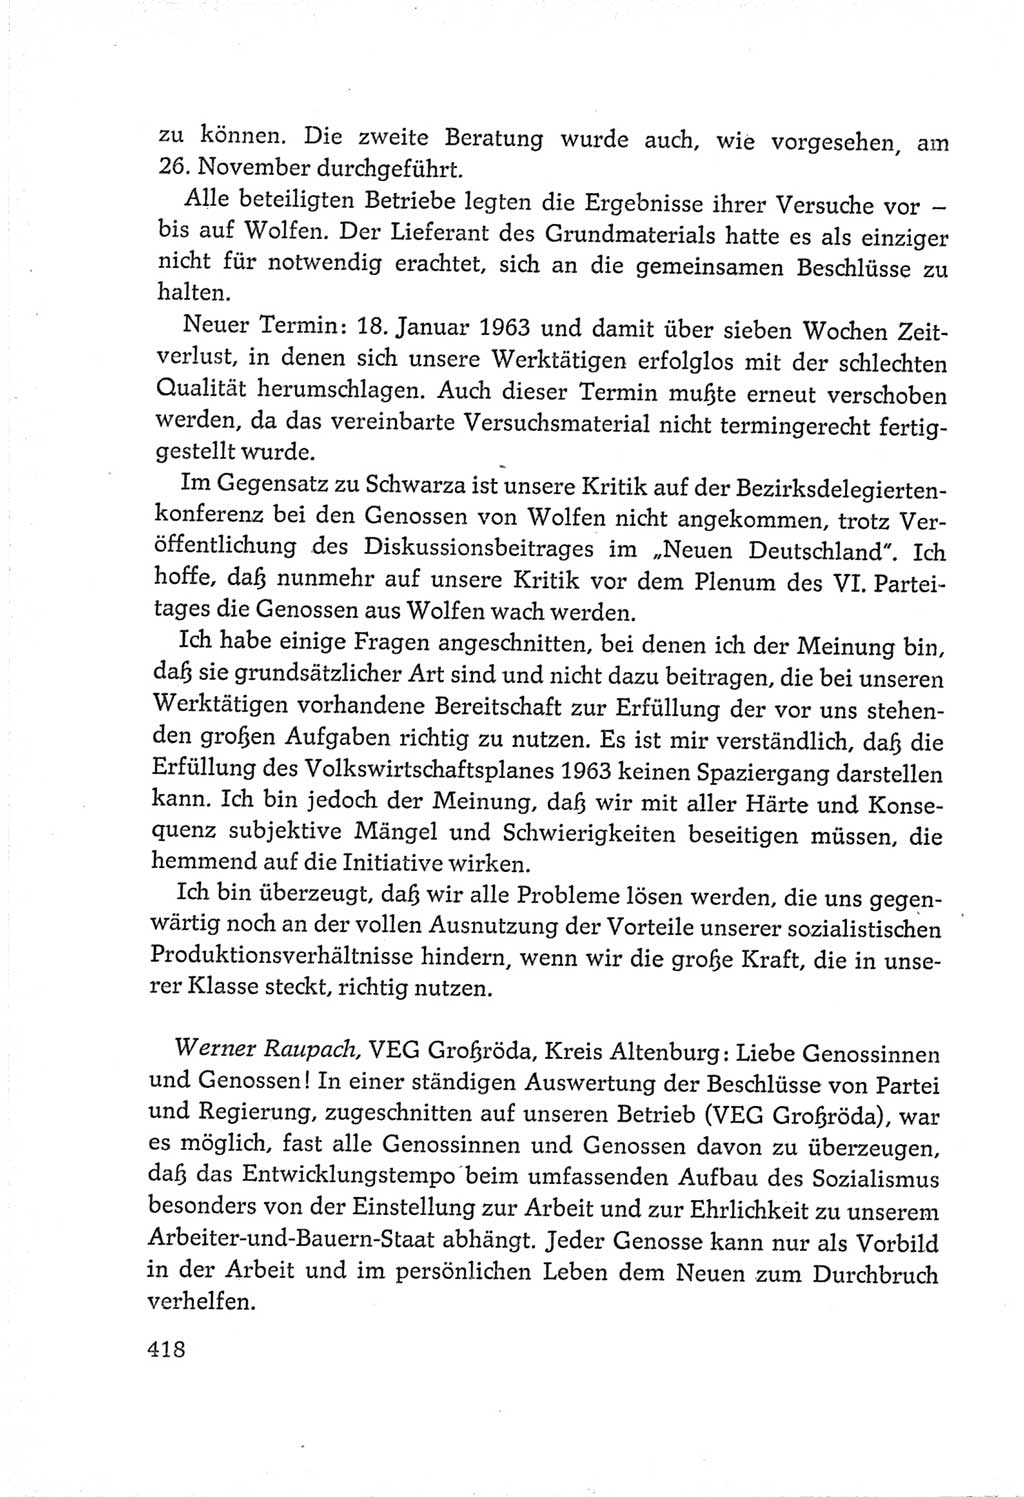 Protokoll der Verhandlungen des Ⅵ. Parteitages der Sozialistischen Einheitspartei Deutschlands (SED) [Deutsche Demokratische Republik (DDR)] 1963, Band Ⅲ, Seite 418 (Prot. Verh. Ⅵ. PT SED DDR 1963, Bd. Ⅲ, S. 418)